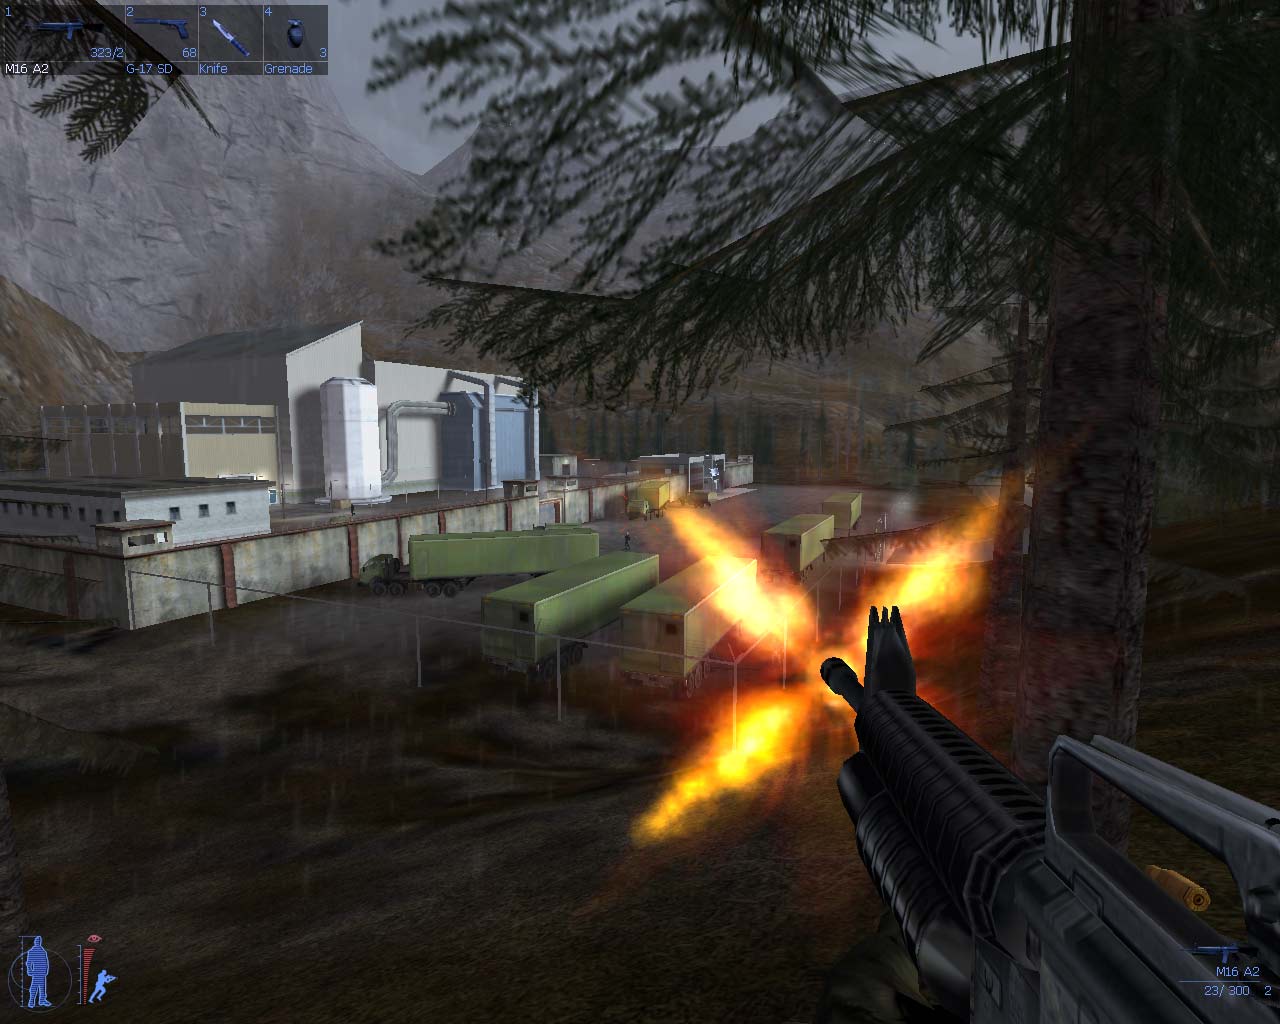 fondo de pantalla del juego,juego de acción y aventura,juego de pc,juego de disparos,juegos,captura de pantalla